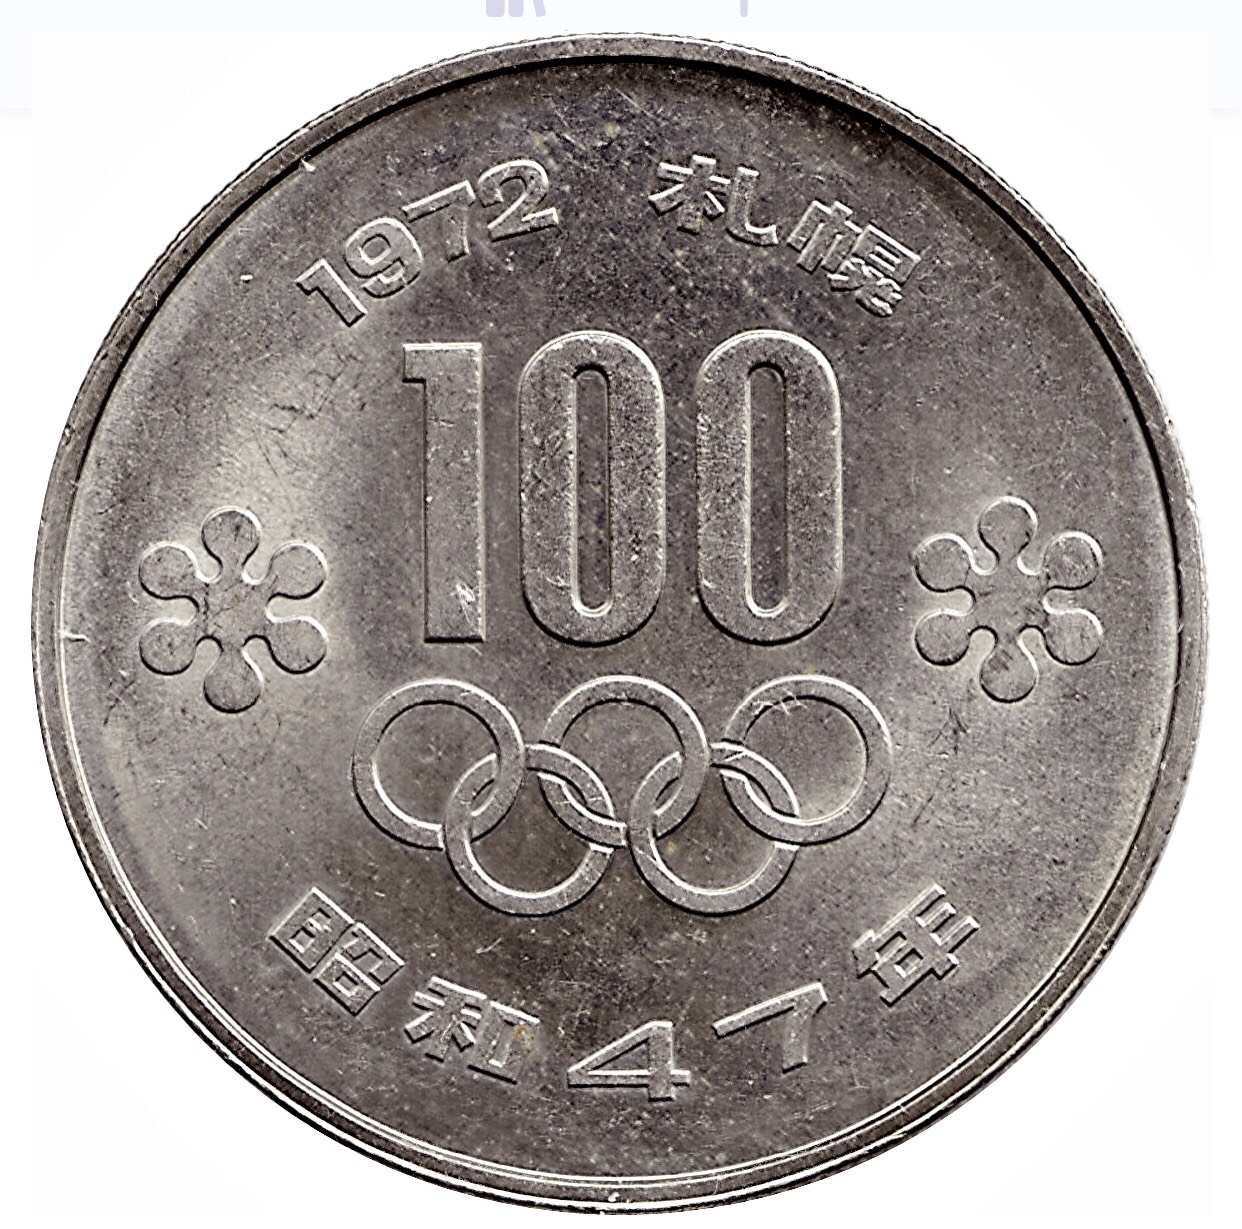 Xu Nhật Bản 100 Yên kỷ niệm Thế vận hội mùa Đông 1972 tại Sapporo Nhật Bản, kèm hộp đựng sang trọng